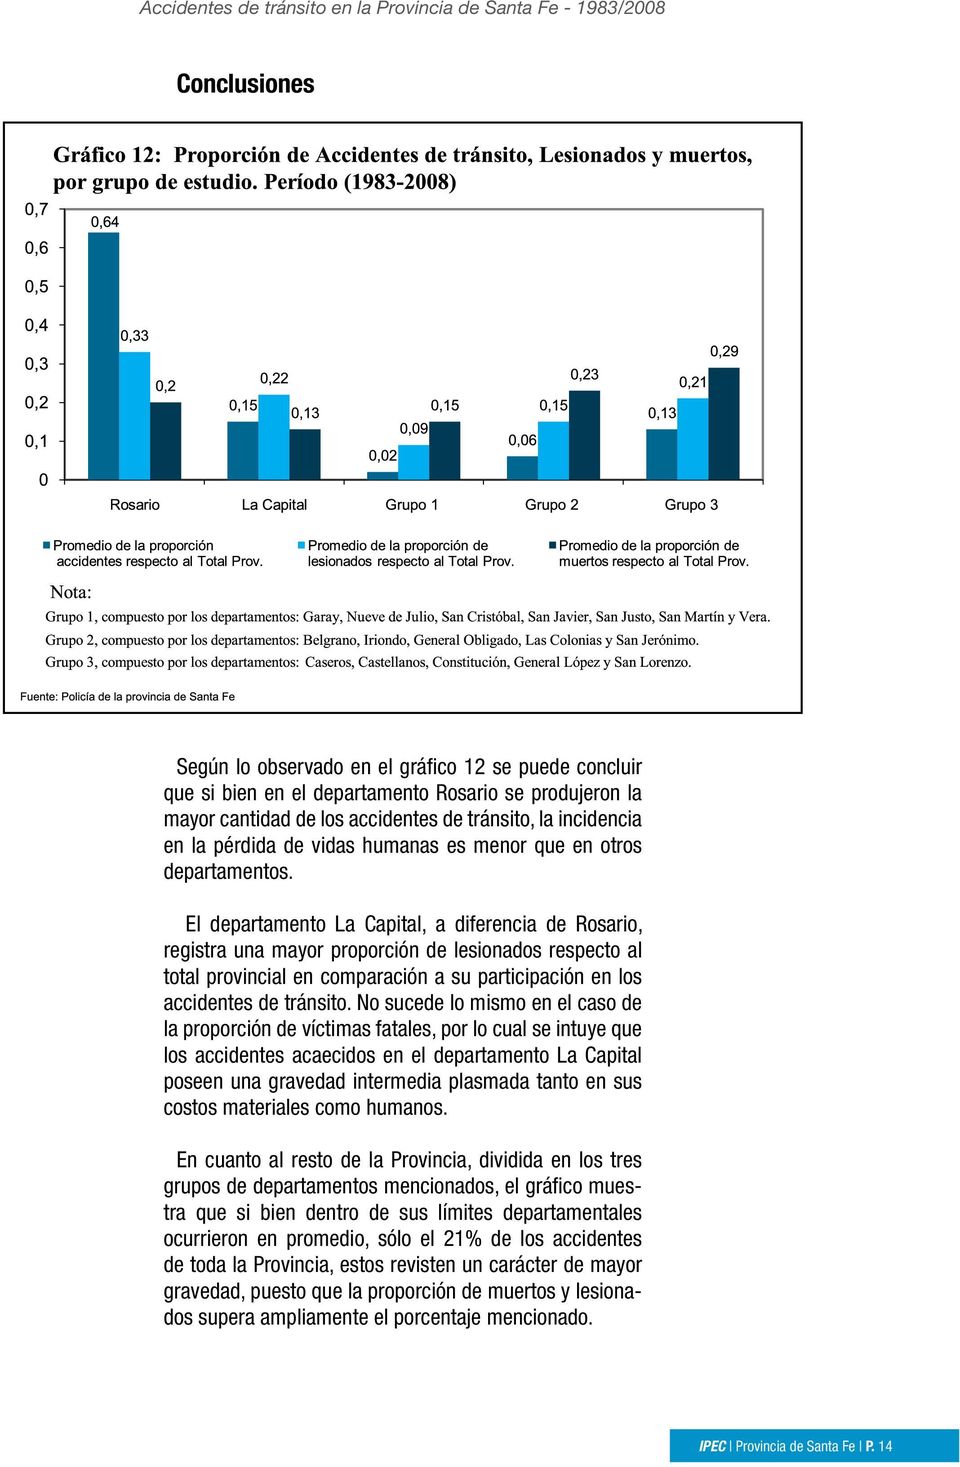 El departamento La Capital, a diferencia de Rosario, registra una mayor proporción de lesionados respecto al total provincial en comparación a su participación en los accidentes de tránsito.